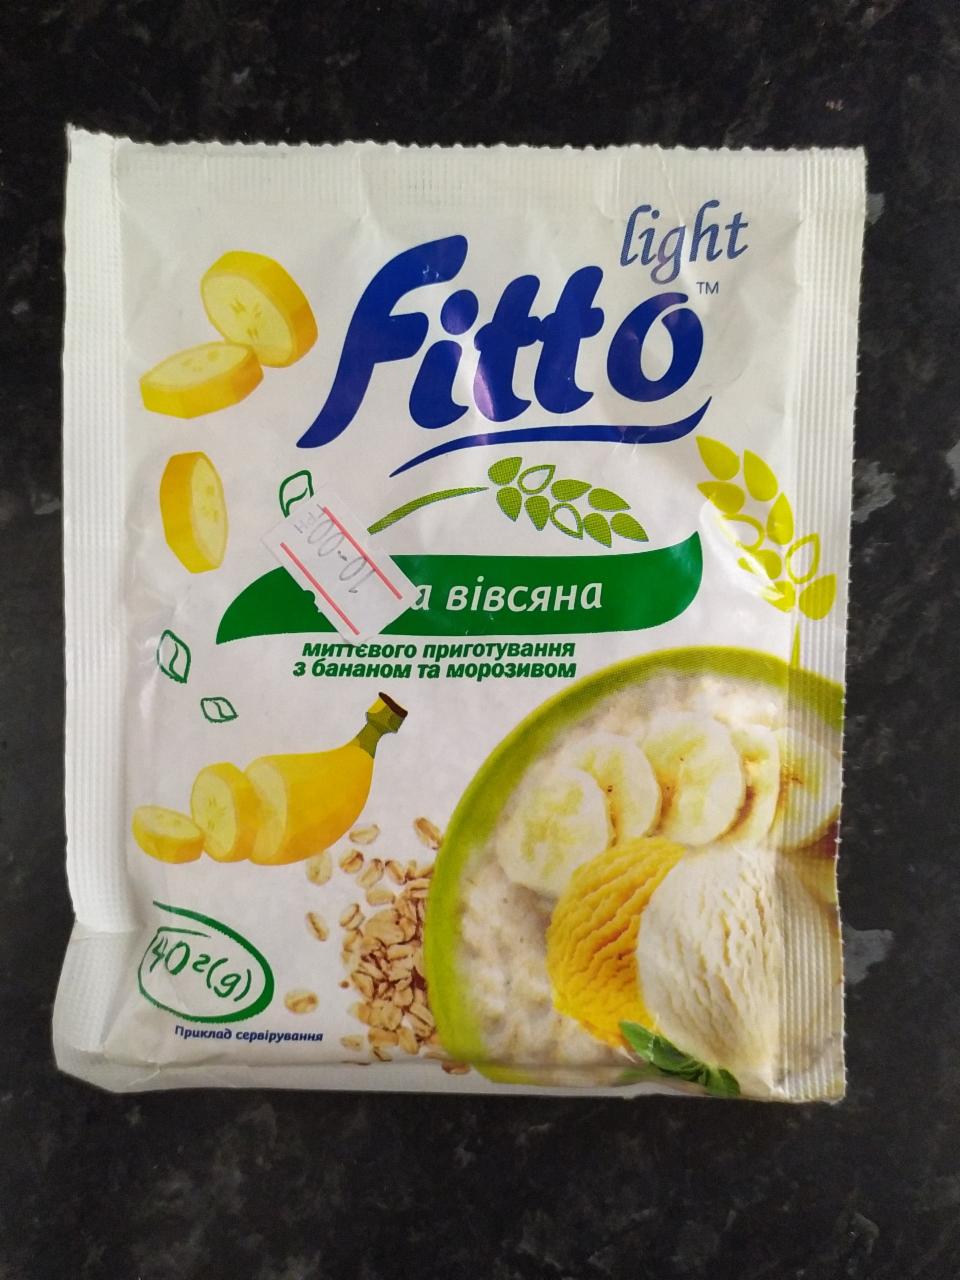 Фото - каша овсяная мгновенного приготовления с бананом и мороженым Fitto Light